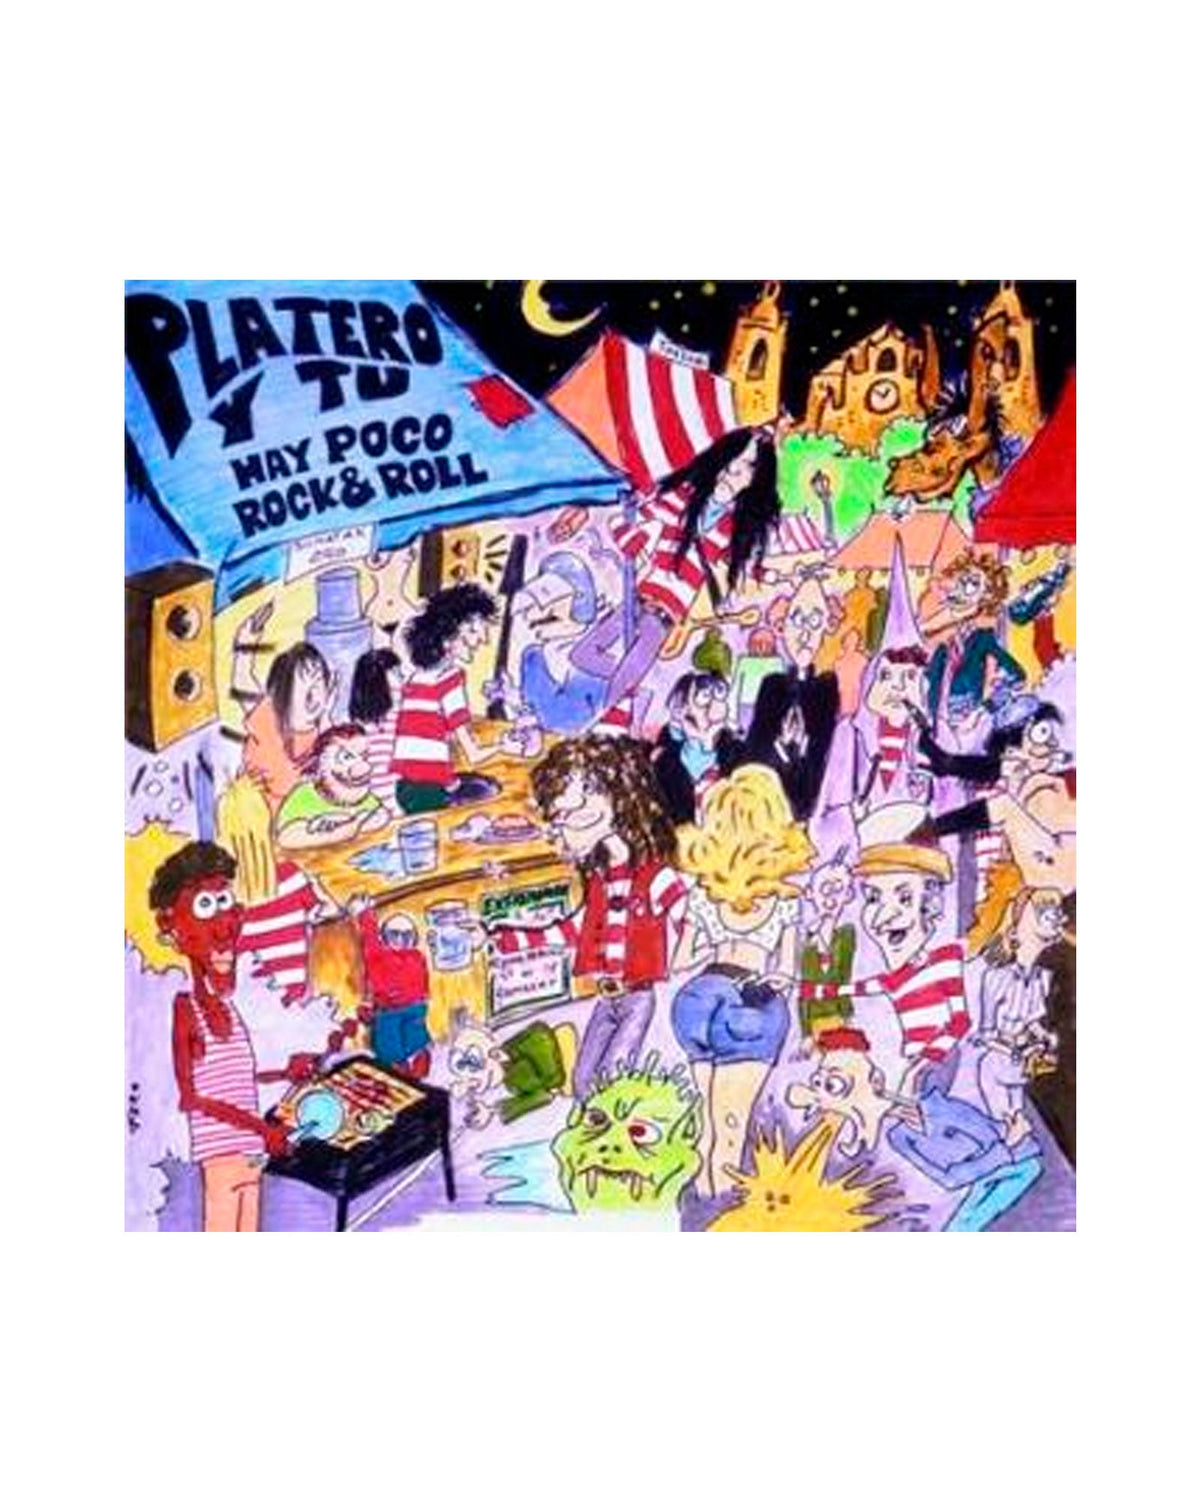 Platero y Tú - LP+CD "Hay Poco Rock&Roll" - Rocktud - Rocktud